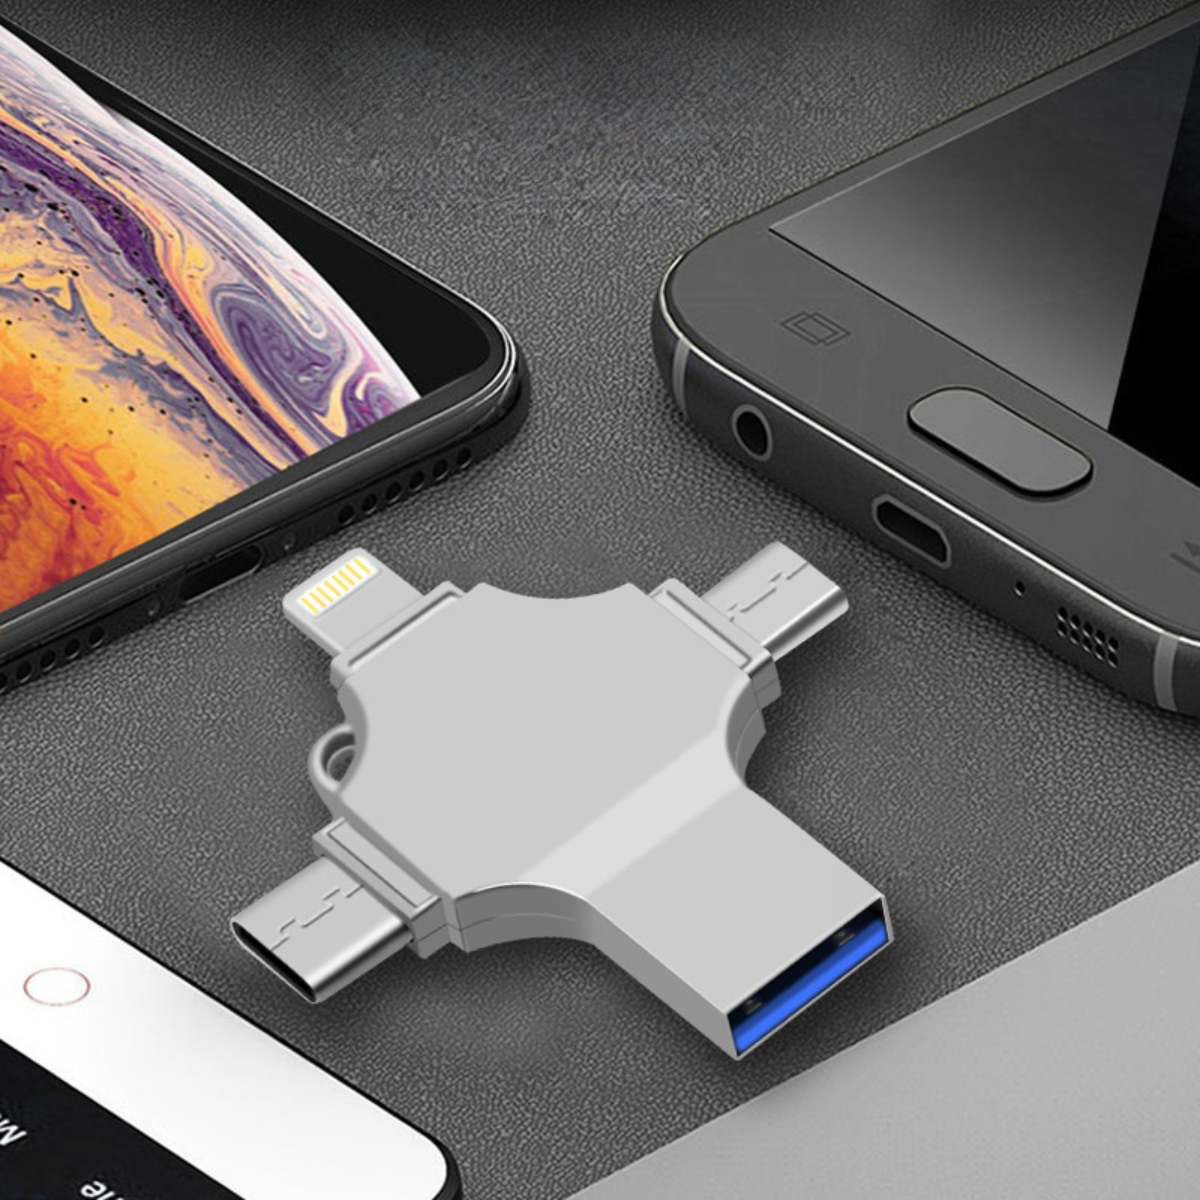 iPhone USBメモリー 64GB 最新版 フラッシュドライブ 4in1 3.0高速Phone usbメモリー フラッシュドライブ アイフォン用メモリ IOS